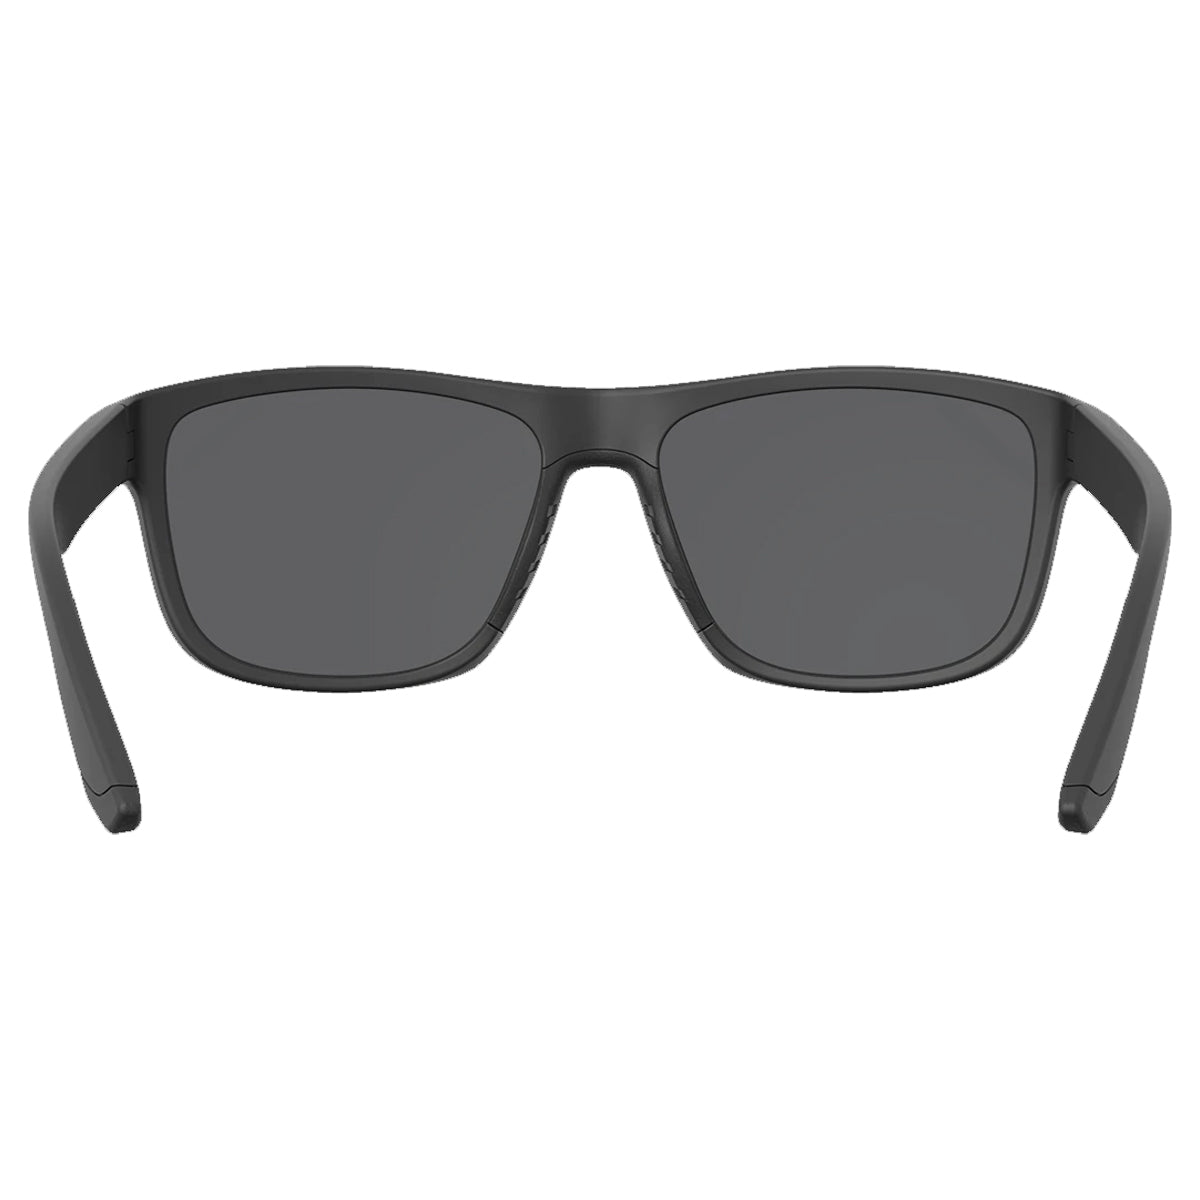 Leupold Katmai Sunglasses